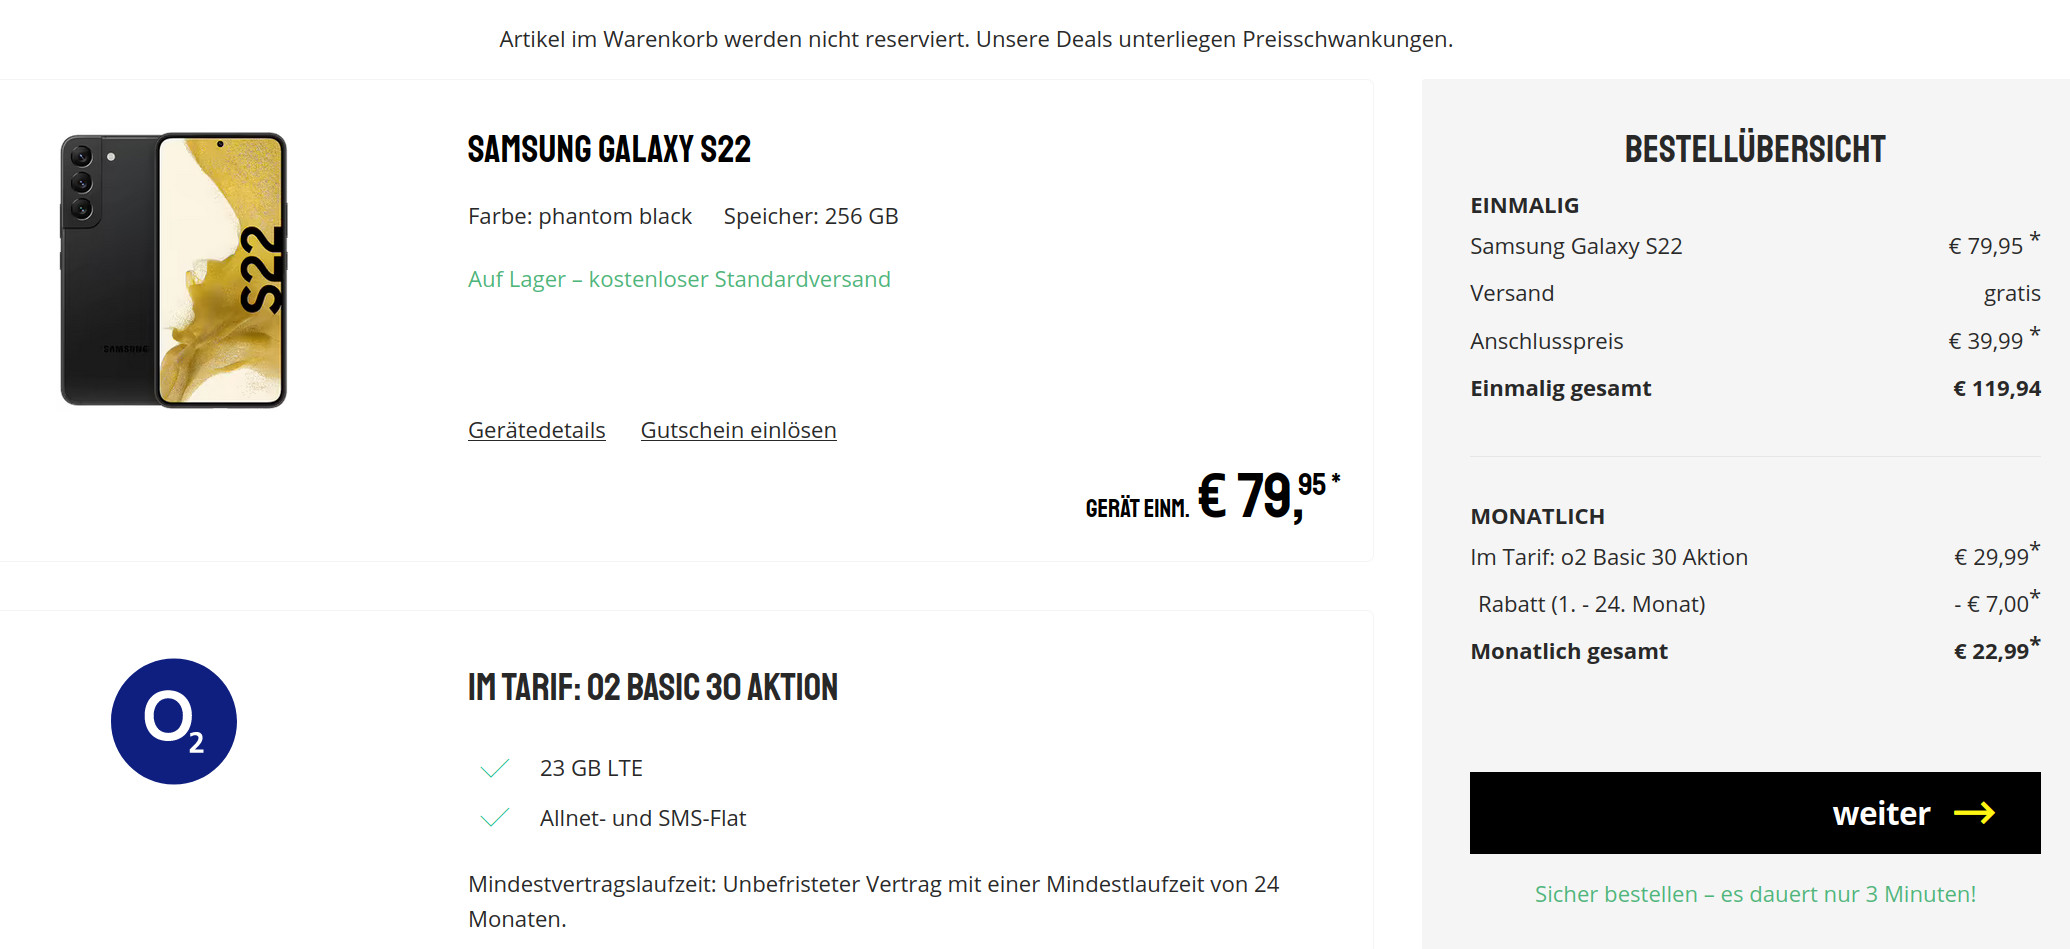 Galaxy S22 5G Handytarife: 23 GB O2 Allnet-Flat für mtl. 22,99 Euro/Eff. 4,61 Euro